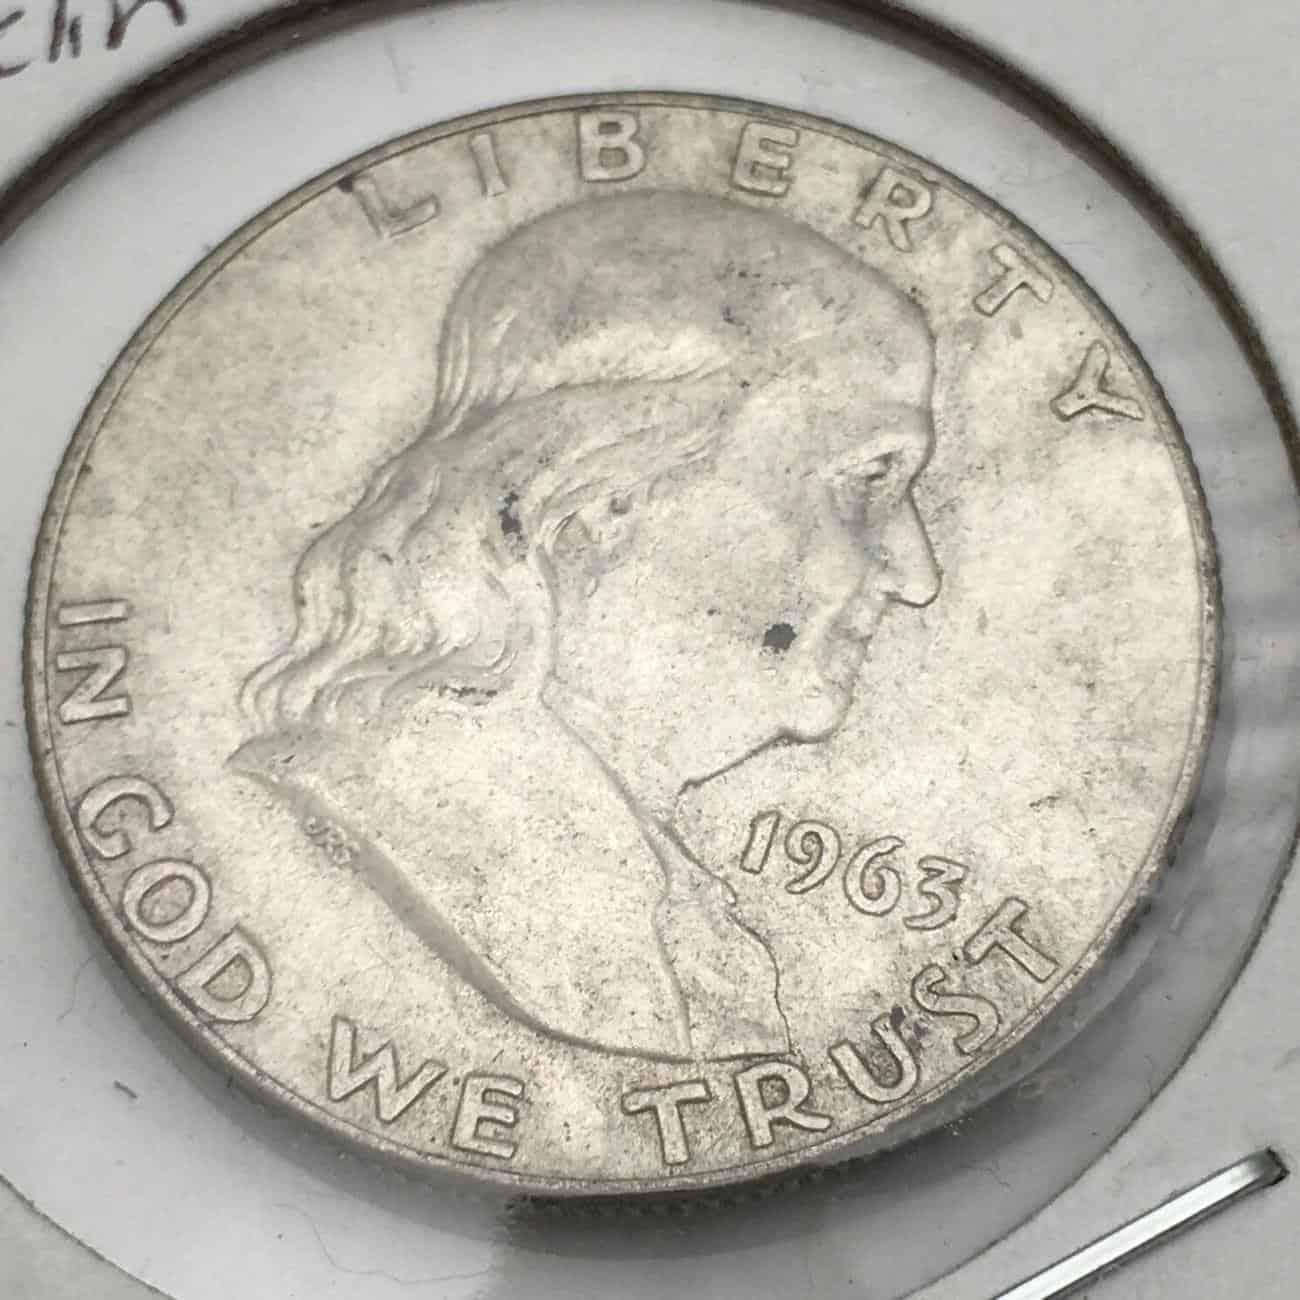 1963 Half Dollar Value